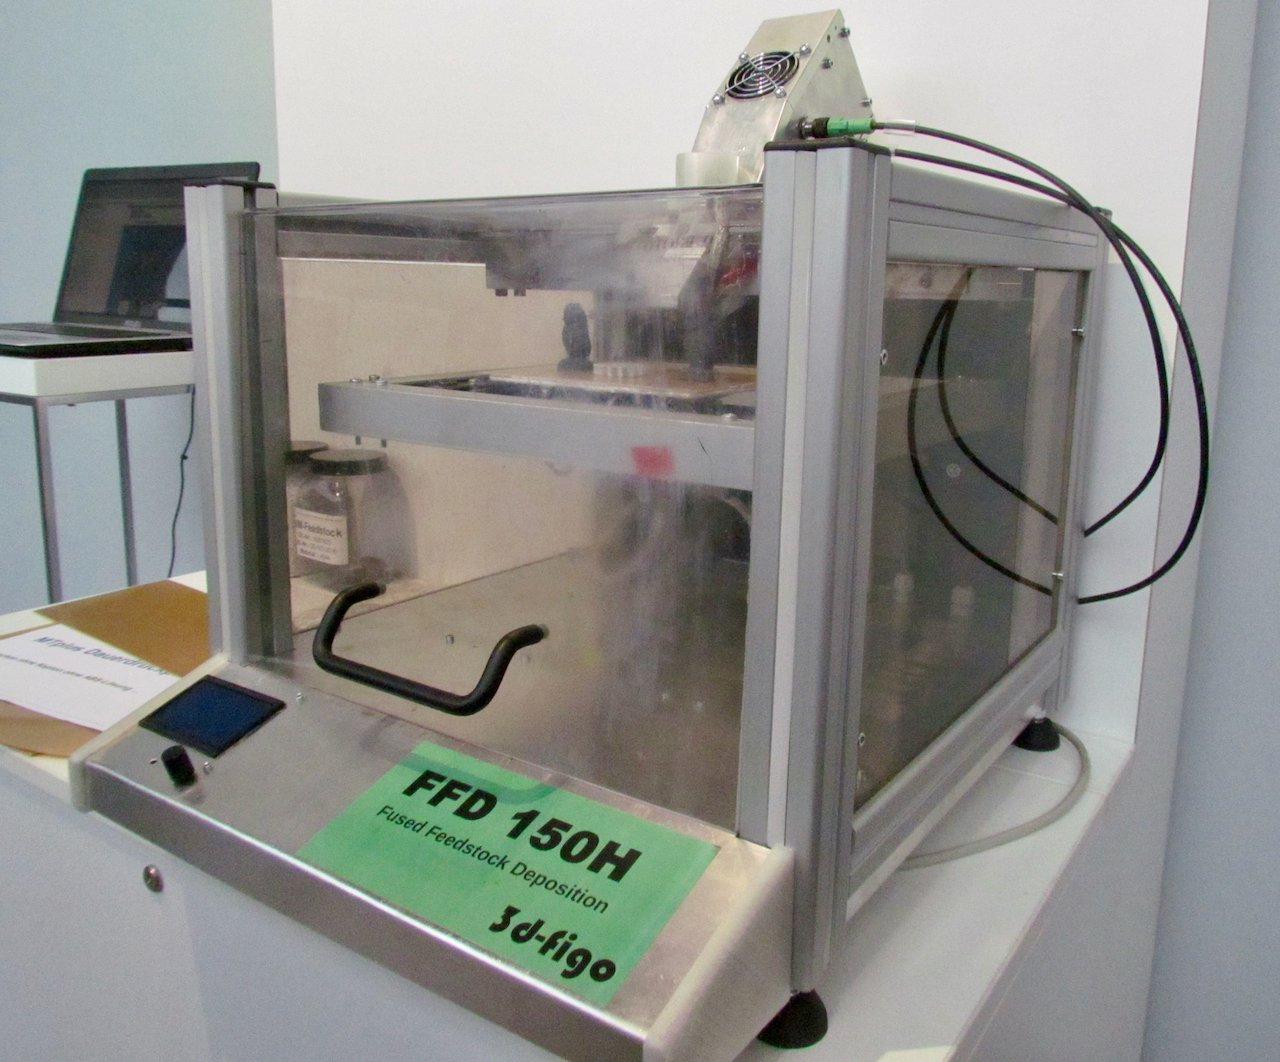  The 3d-figo FFD 150H desktop pellet-based 3D printer 